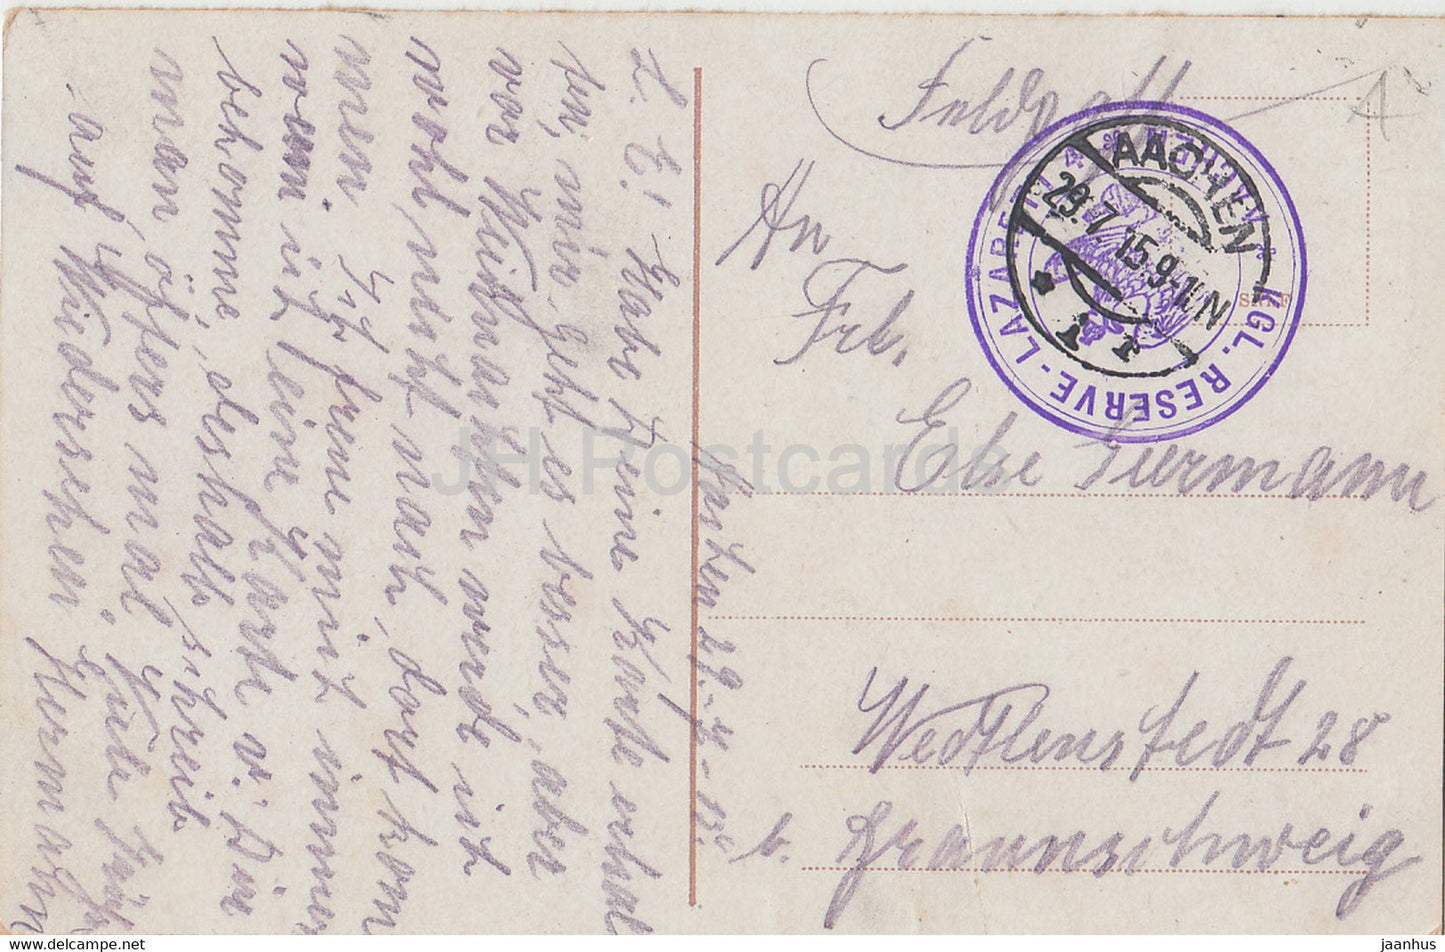 Aachen - Ponttor - Feldpost - alte Postkarte - 1915 - Deutschland - gebraucht